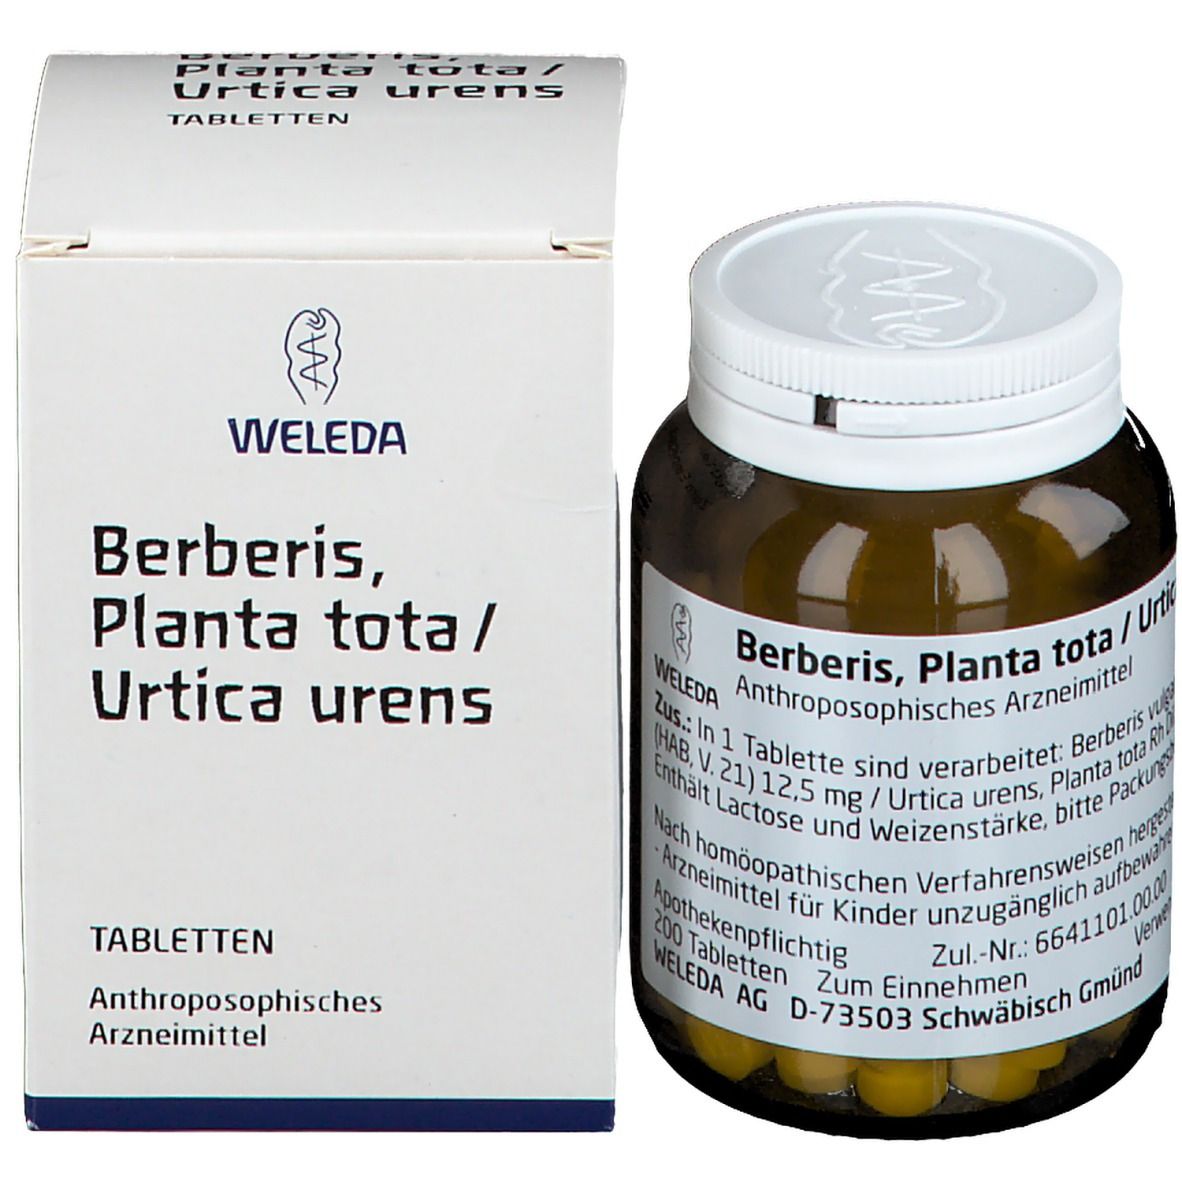 Berberis Planta tota / Urtica urens